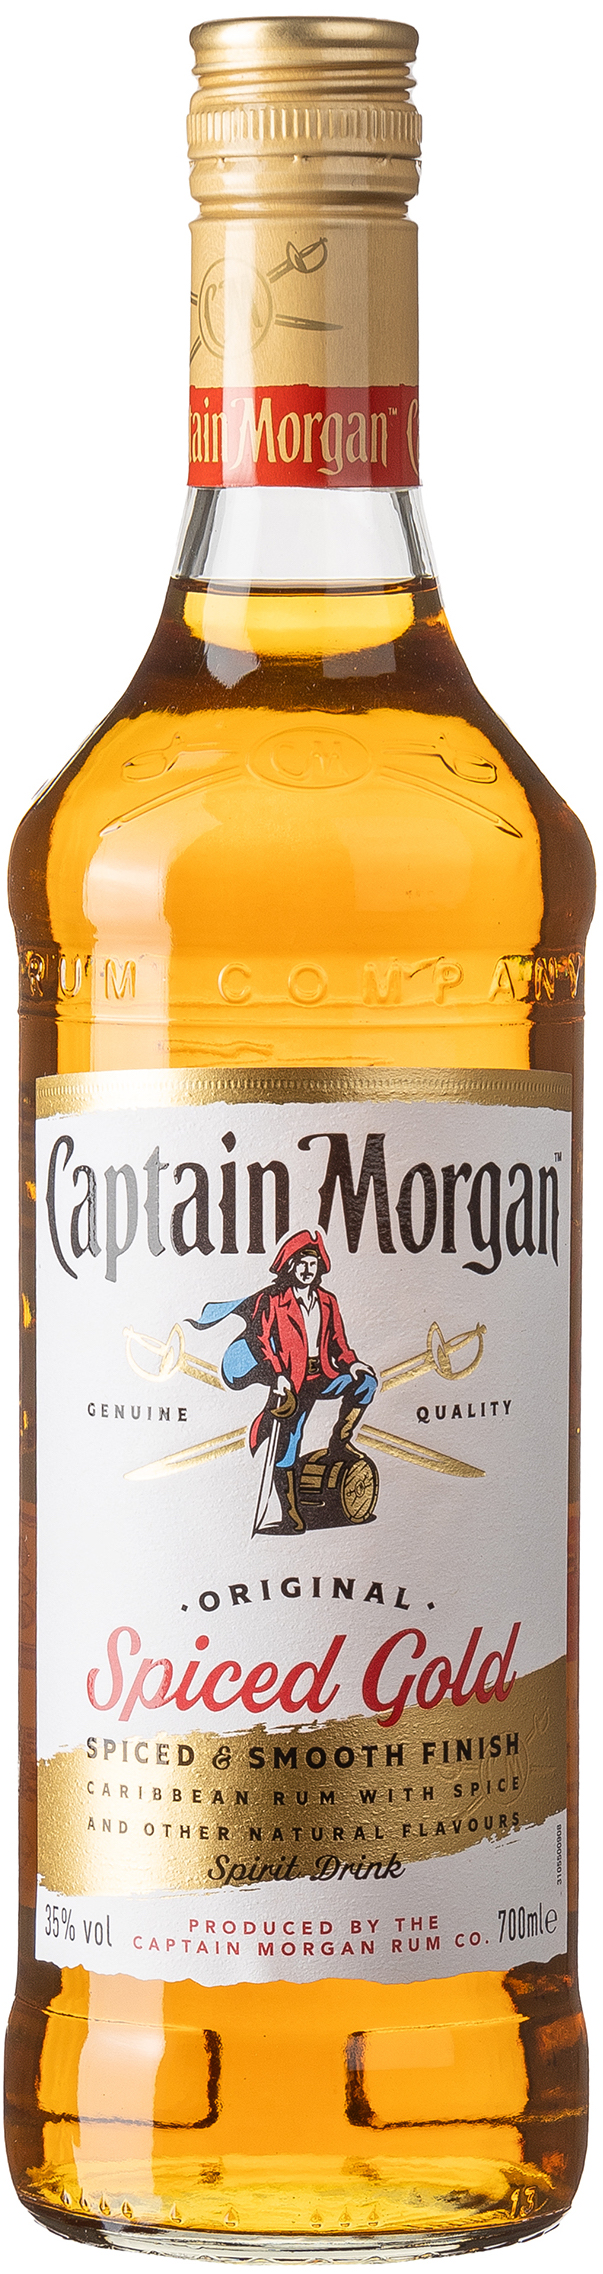 Captain Morgan Original Spiced Gold 35% vol. 0,7L